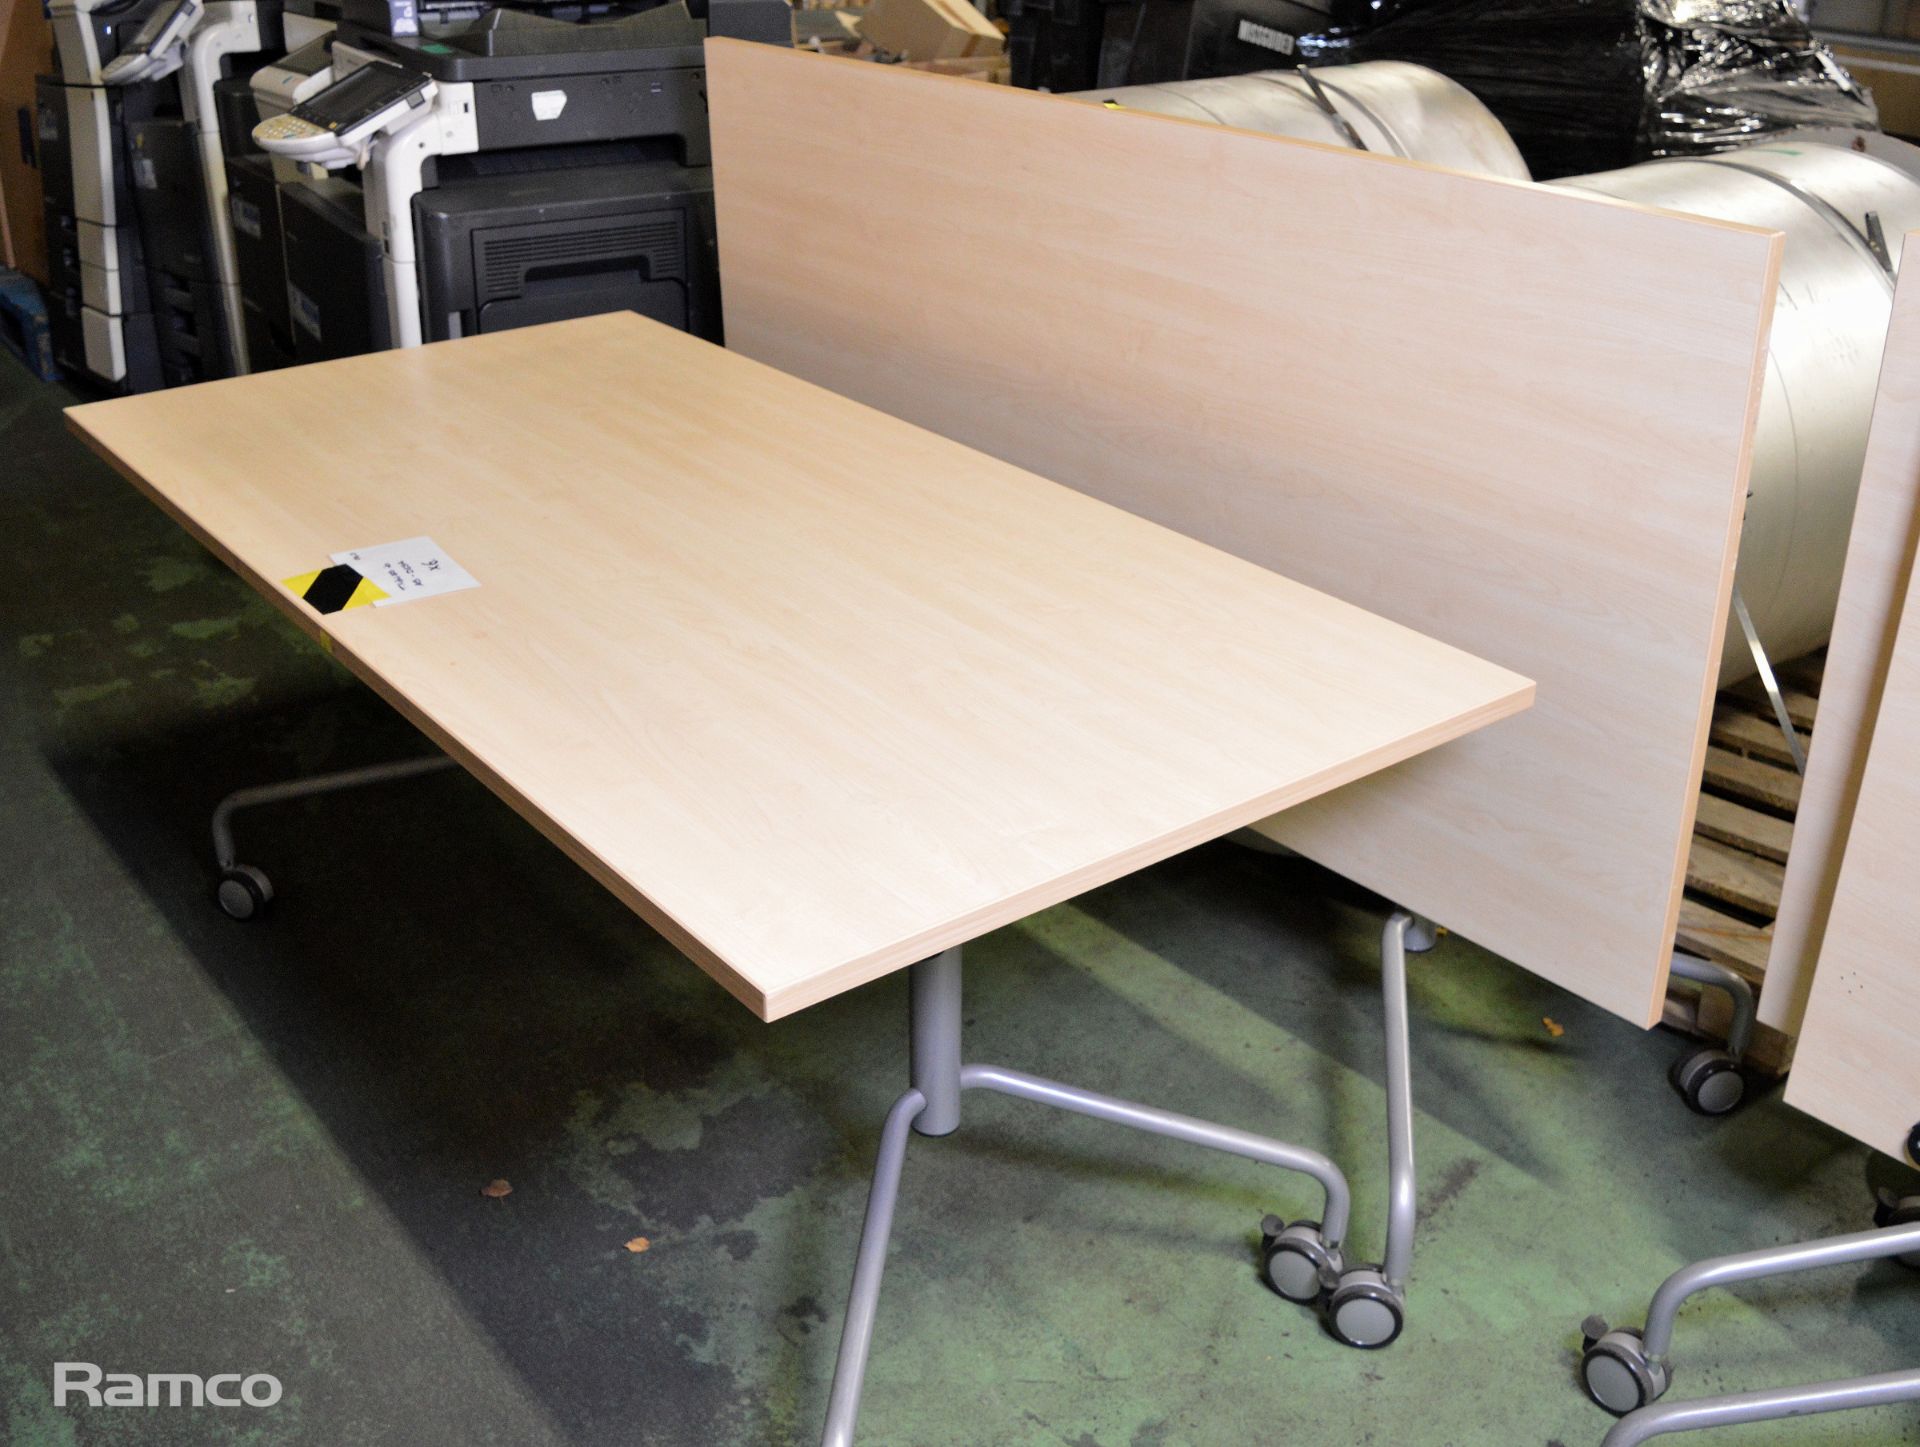 2x Light Wood Effect Tables - L 600mm x W 800mm x H 700mm